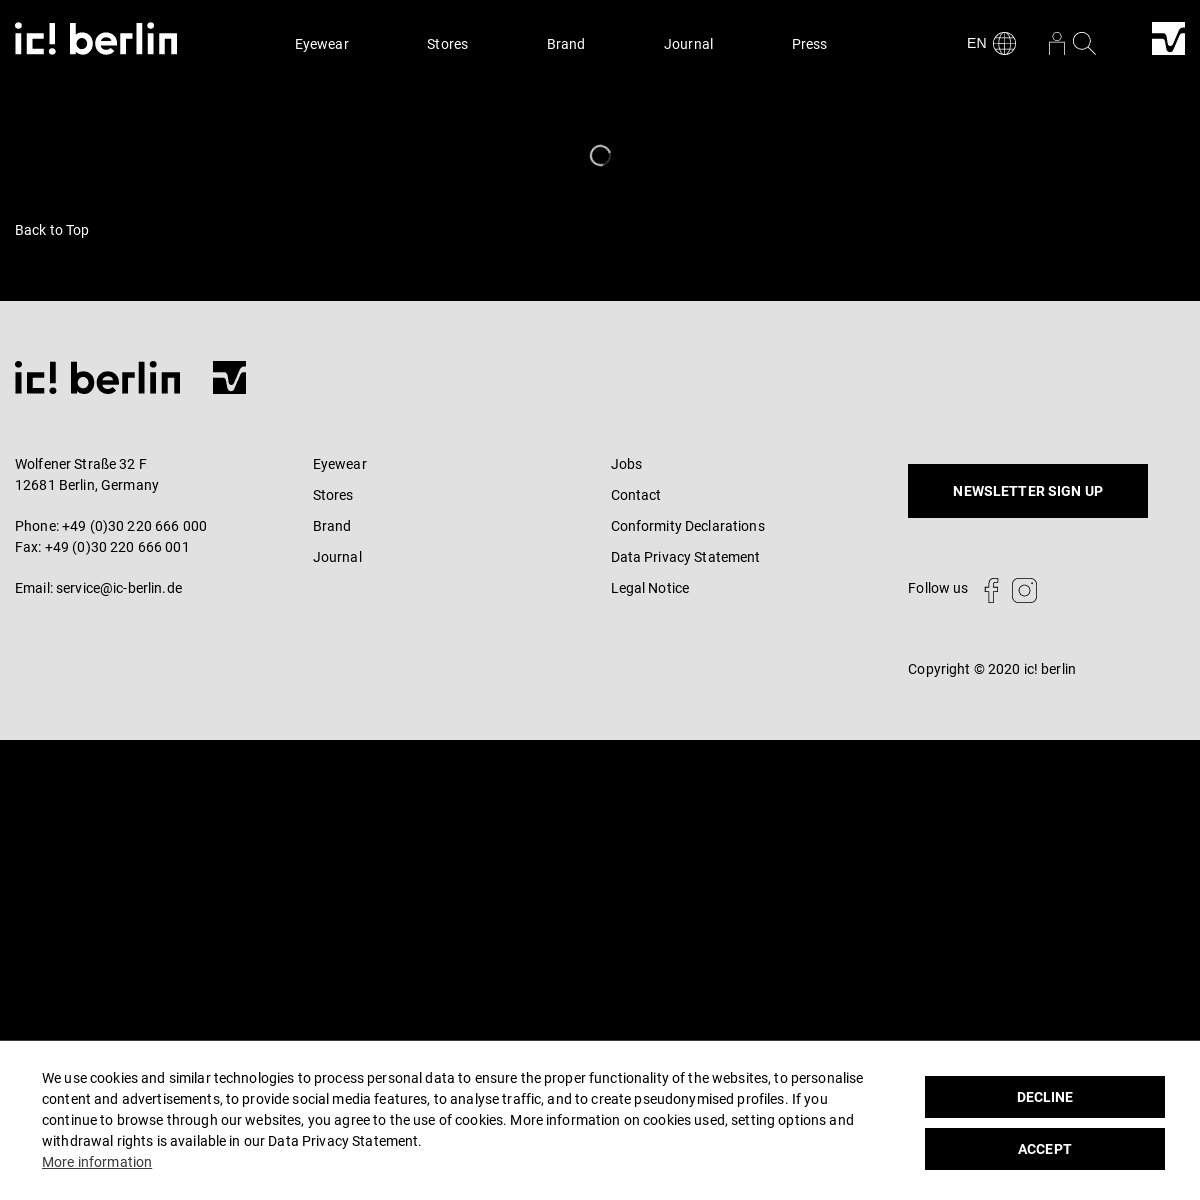 A complete backup of https://ic-berlin.de